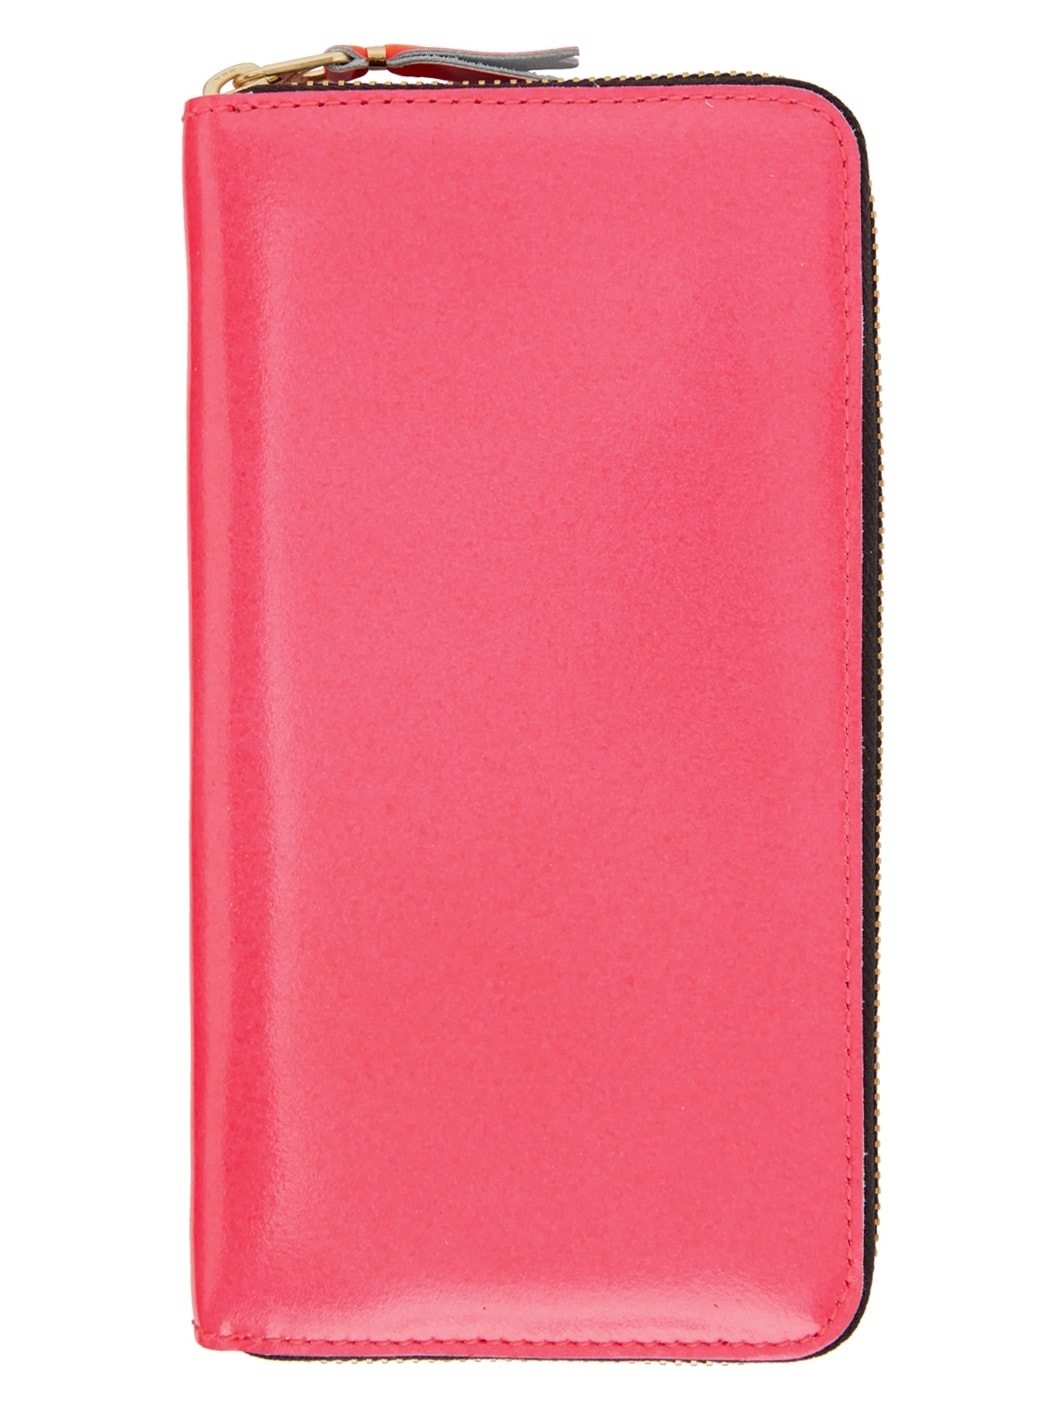 Pink Super Fluo Zip Wallet - 1